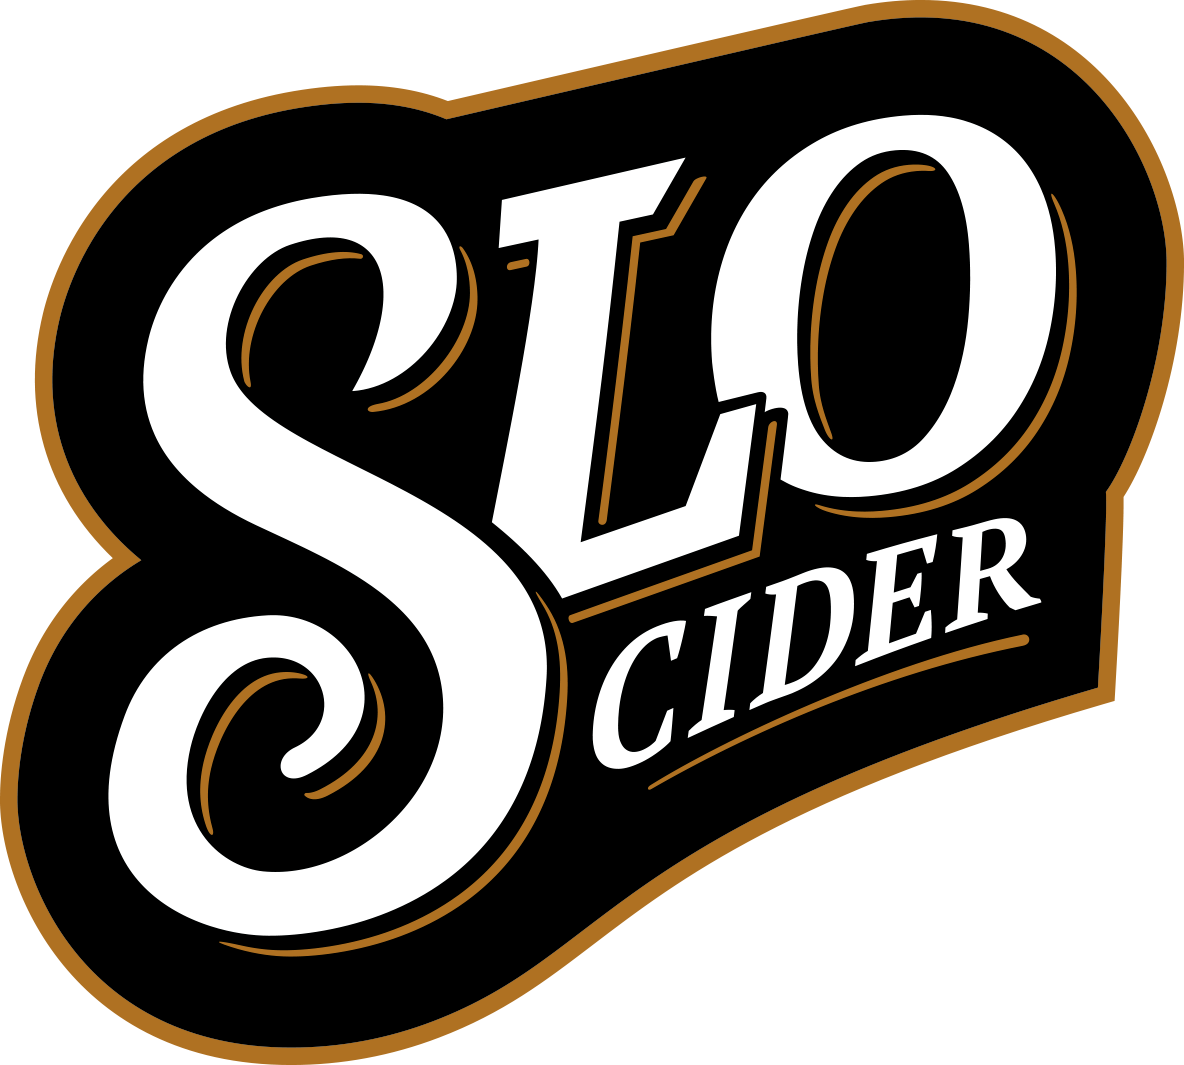 SLO Cider Co. - Hard Cider from San Luis Obispo, California